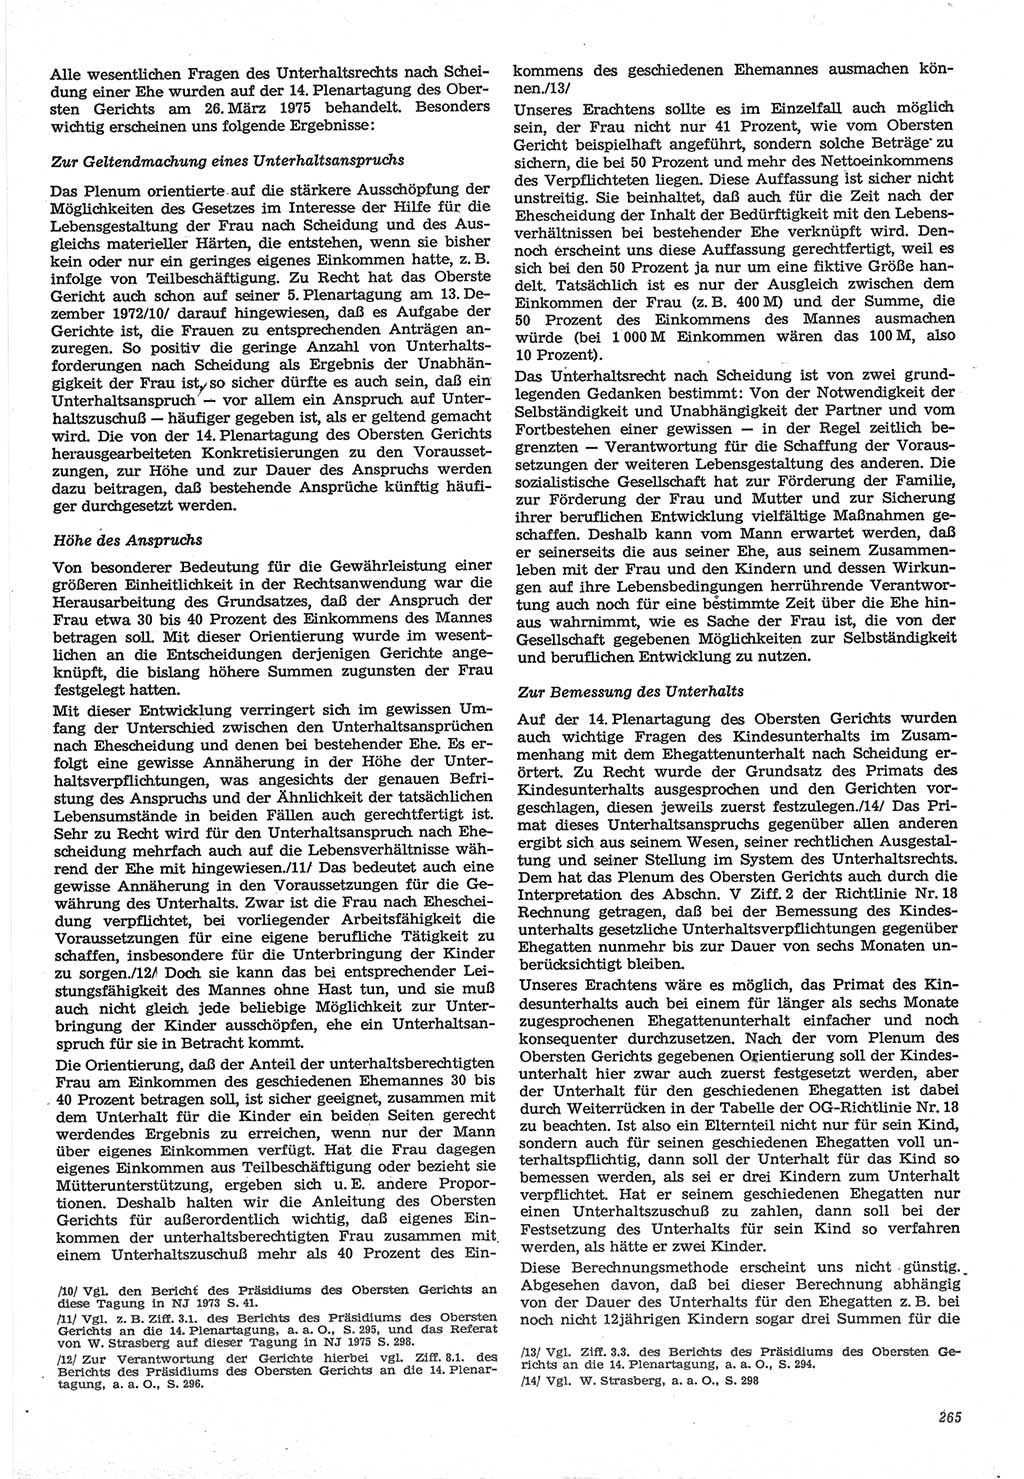 Neue Justiz (NJ), Zeitschrift für Recht und Rechtswissenschaft-Zeitschrift, sozialistisches Recht und Gesetzlichkeit, 31. Jahrgang 1977, Seite 265 (NJ DDR 1977, S. 265)